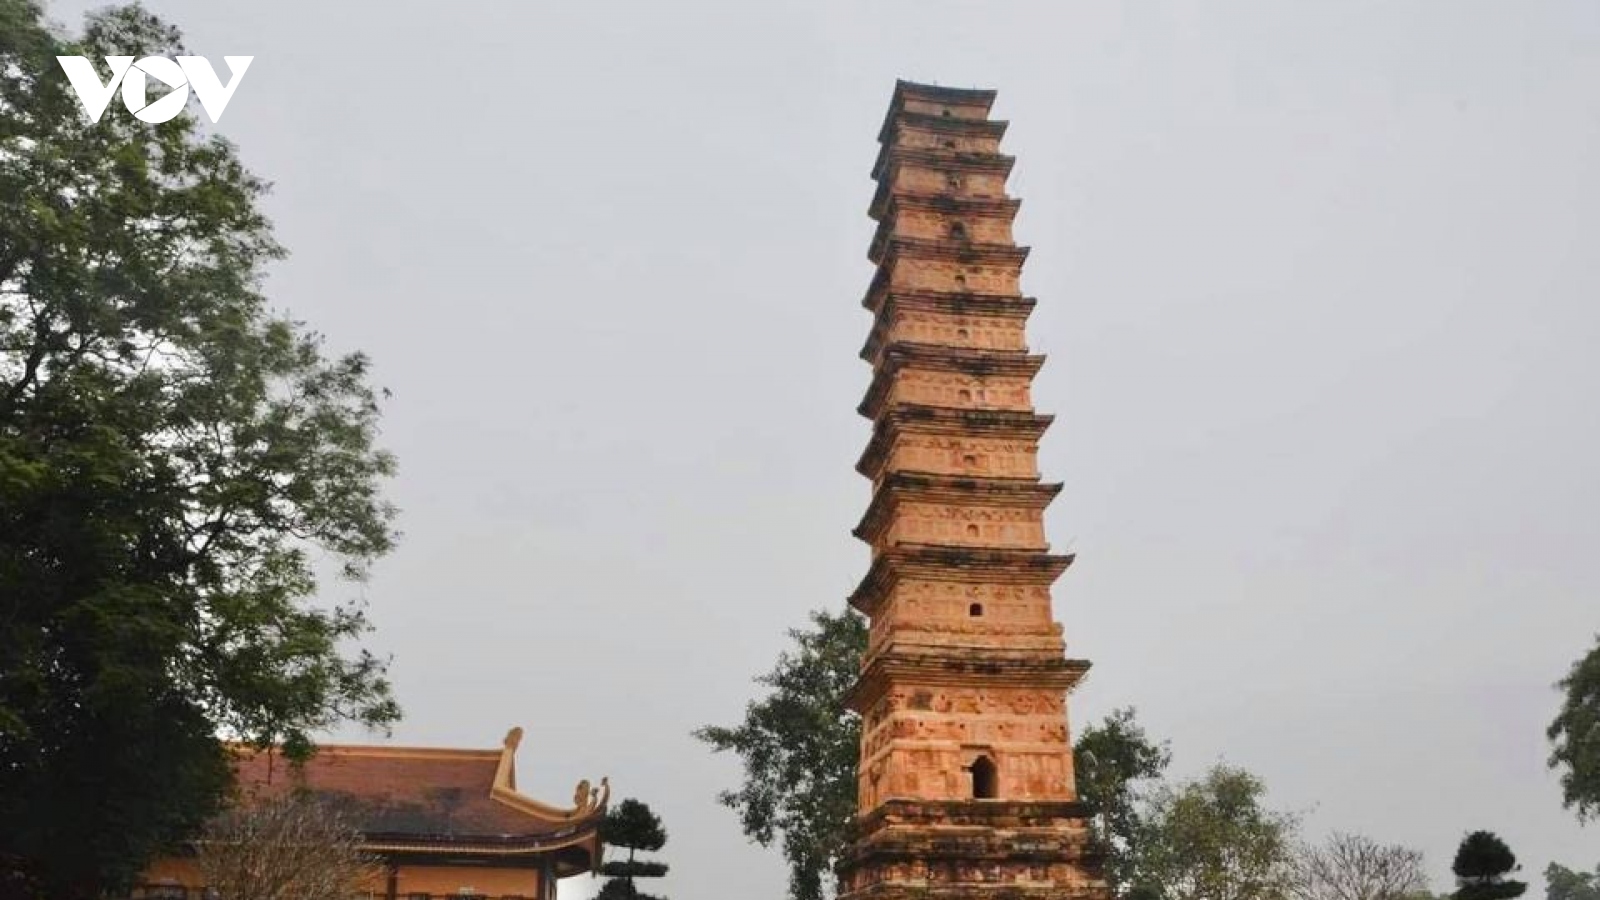 Tháp Bình Sơn, kiến trúc độc đáo ở Vĩnh Phúc